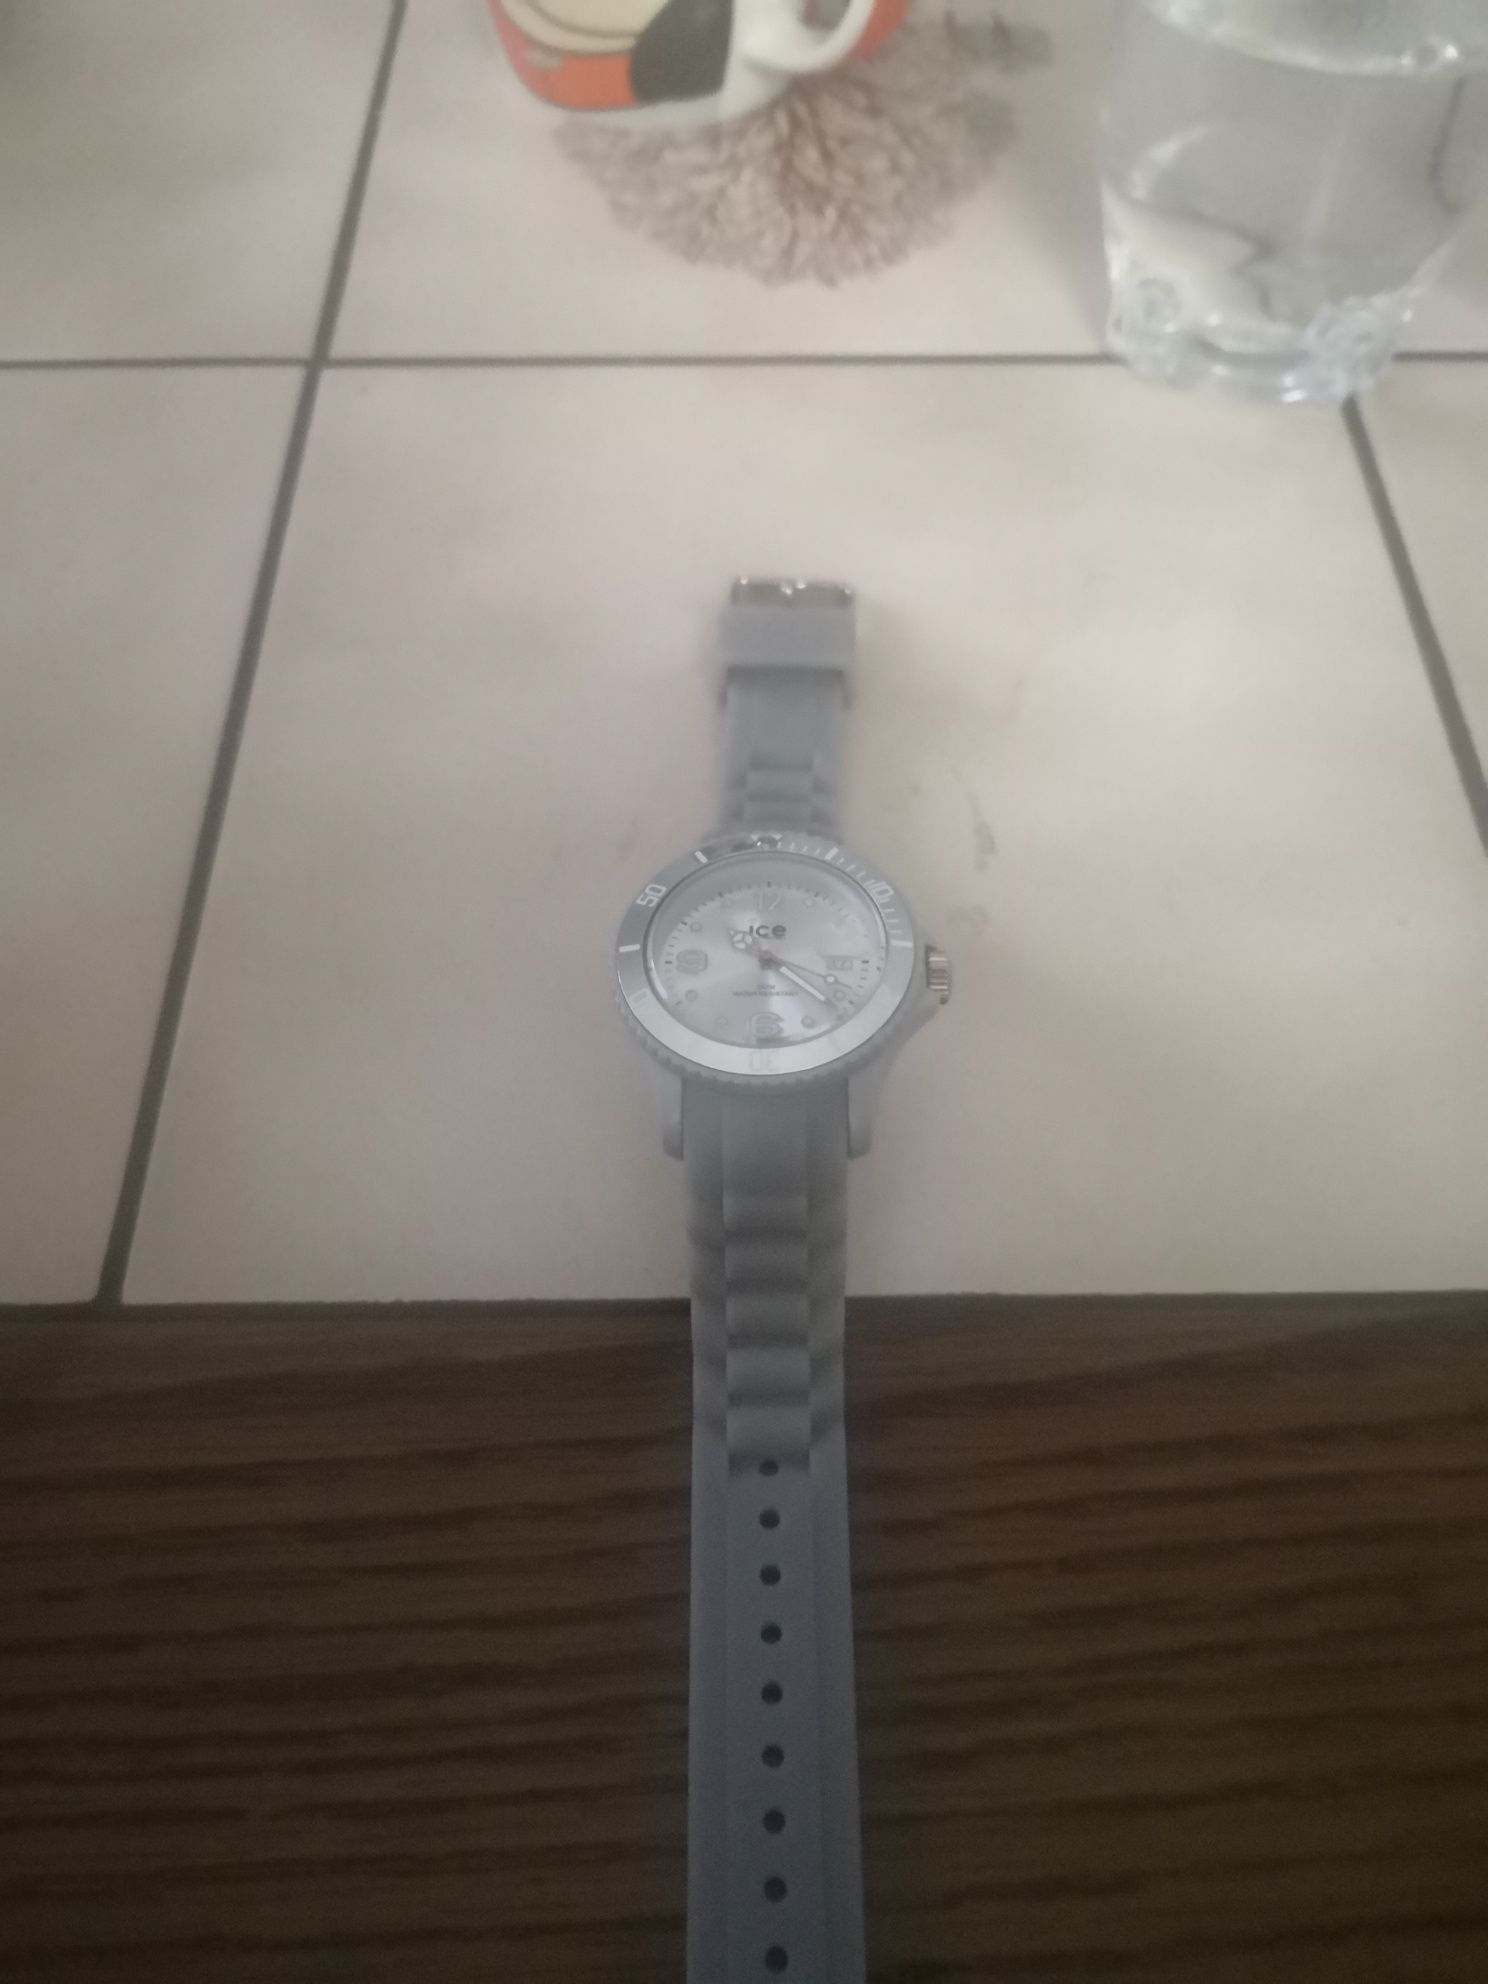 Zegarek ICE watch